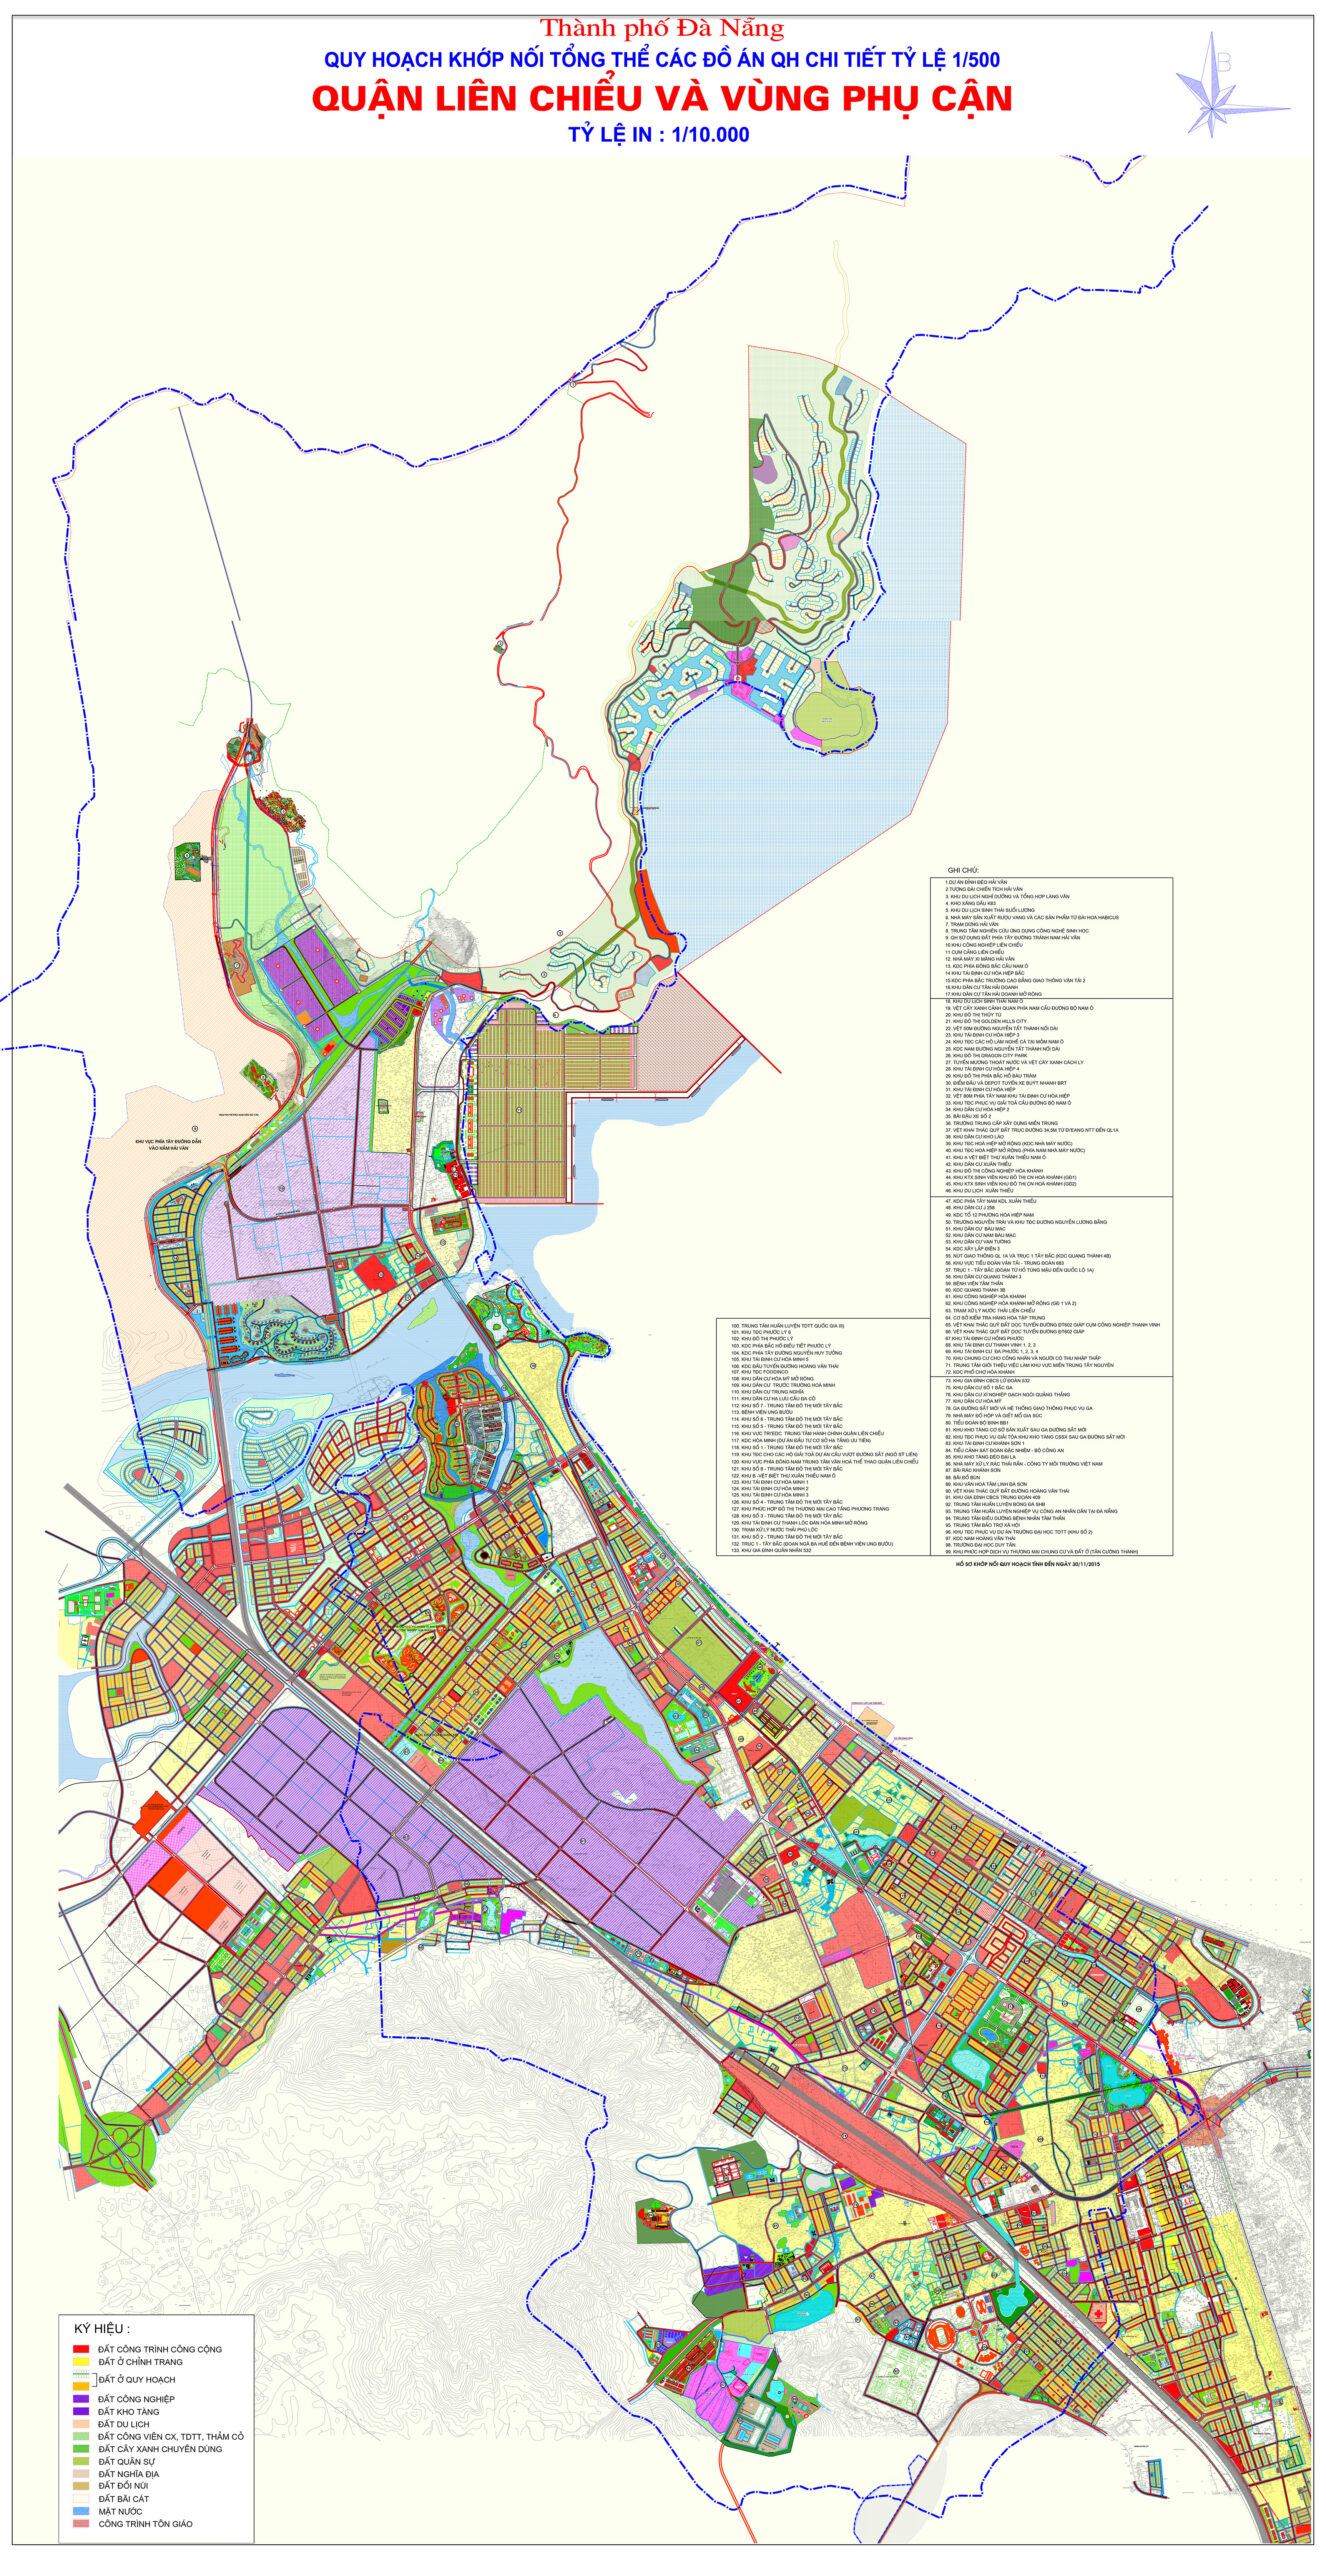 Đà Nẵng - quy hoạch TP. 2022: Kế hoạch quy hoạch của Đà Nẵng đang rất hợp lý để đưa thành phố phát triển một cách bền vững và đáng tự hào. Hãy xem hình ảnh để nhận thức được sự phát triển nhanh chóng của thành phố này!